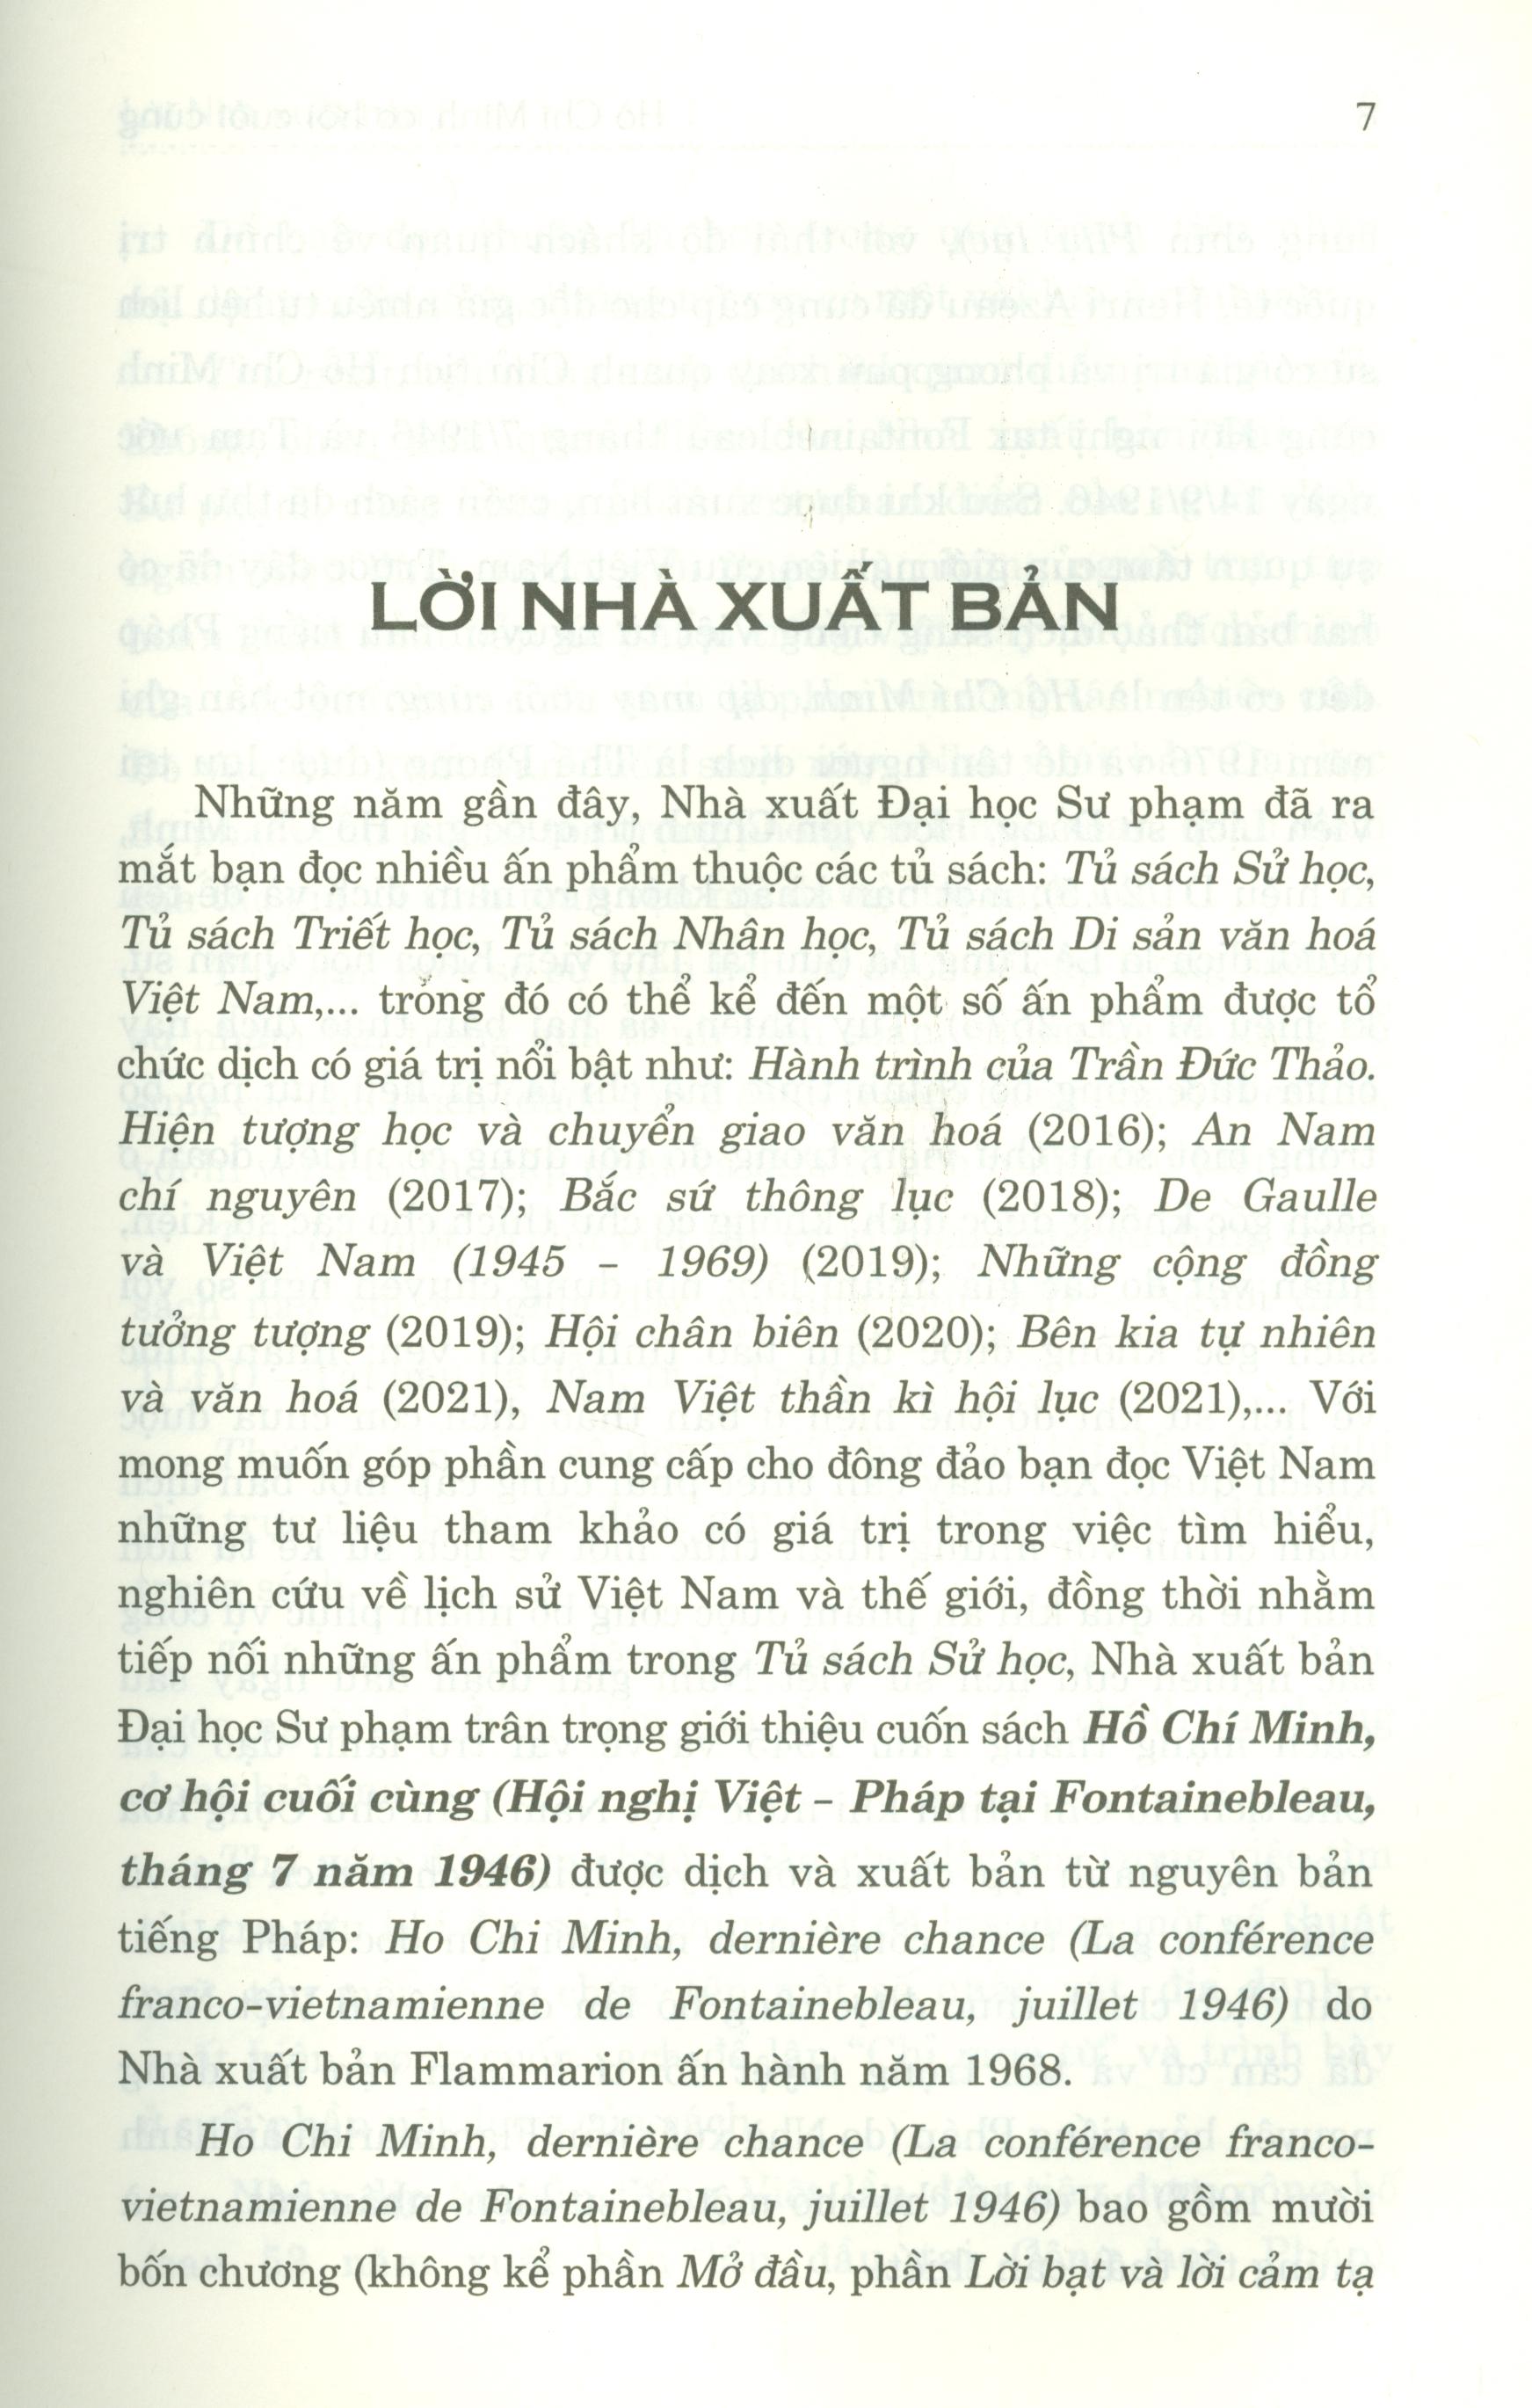 Hồ Chí Minh Cơ Hội Cuối Cùng (Hội Nghị Việt - Pháp Tại Fontainebleau, Tháng 7 Năm 1946) - Bìa mềm